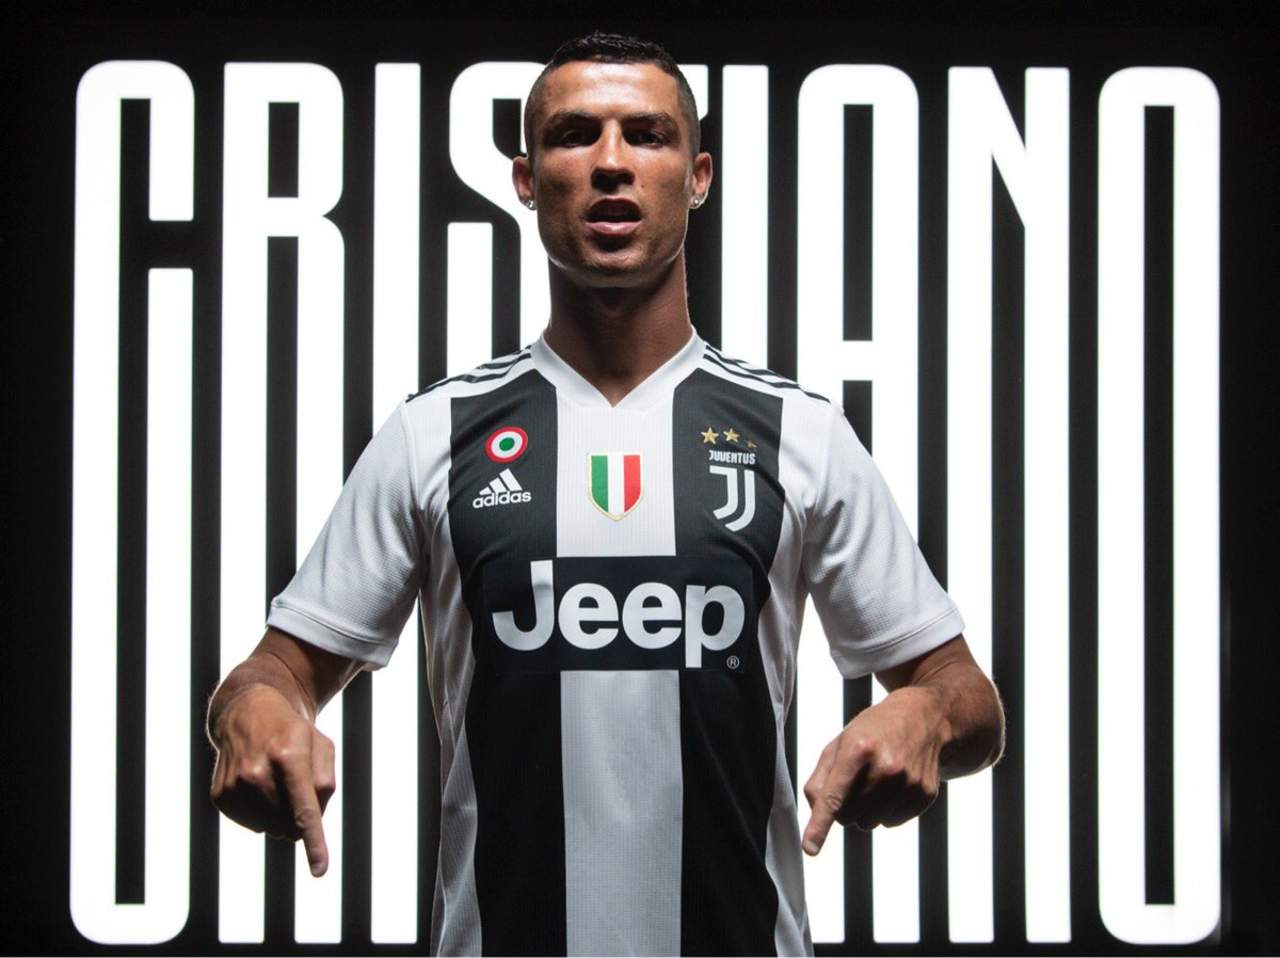 El nuevo jugador estrella de la Juventus se estrenará ante el Chievo Verona. (Especial)